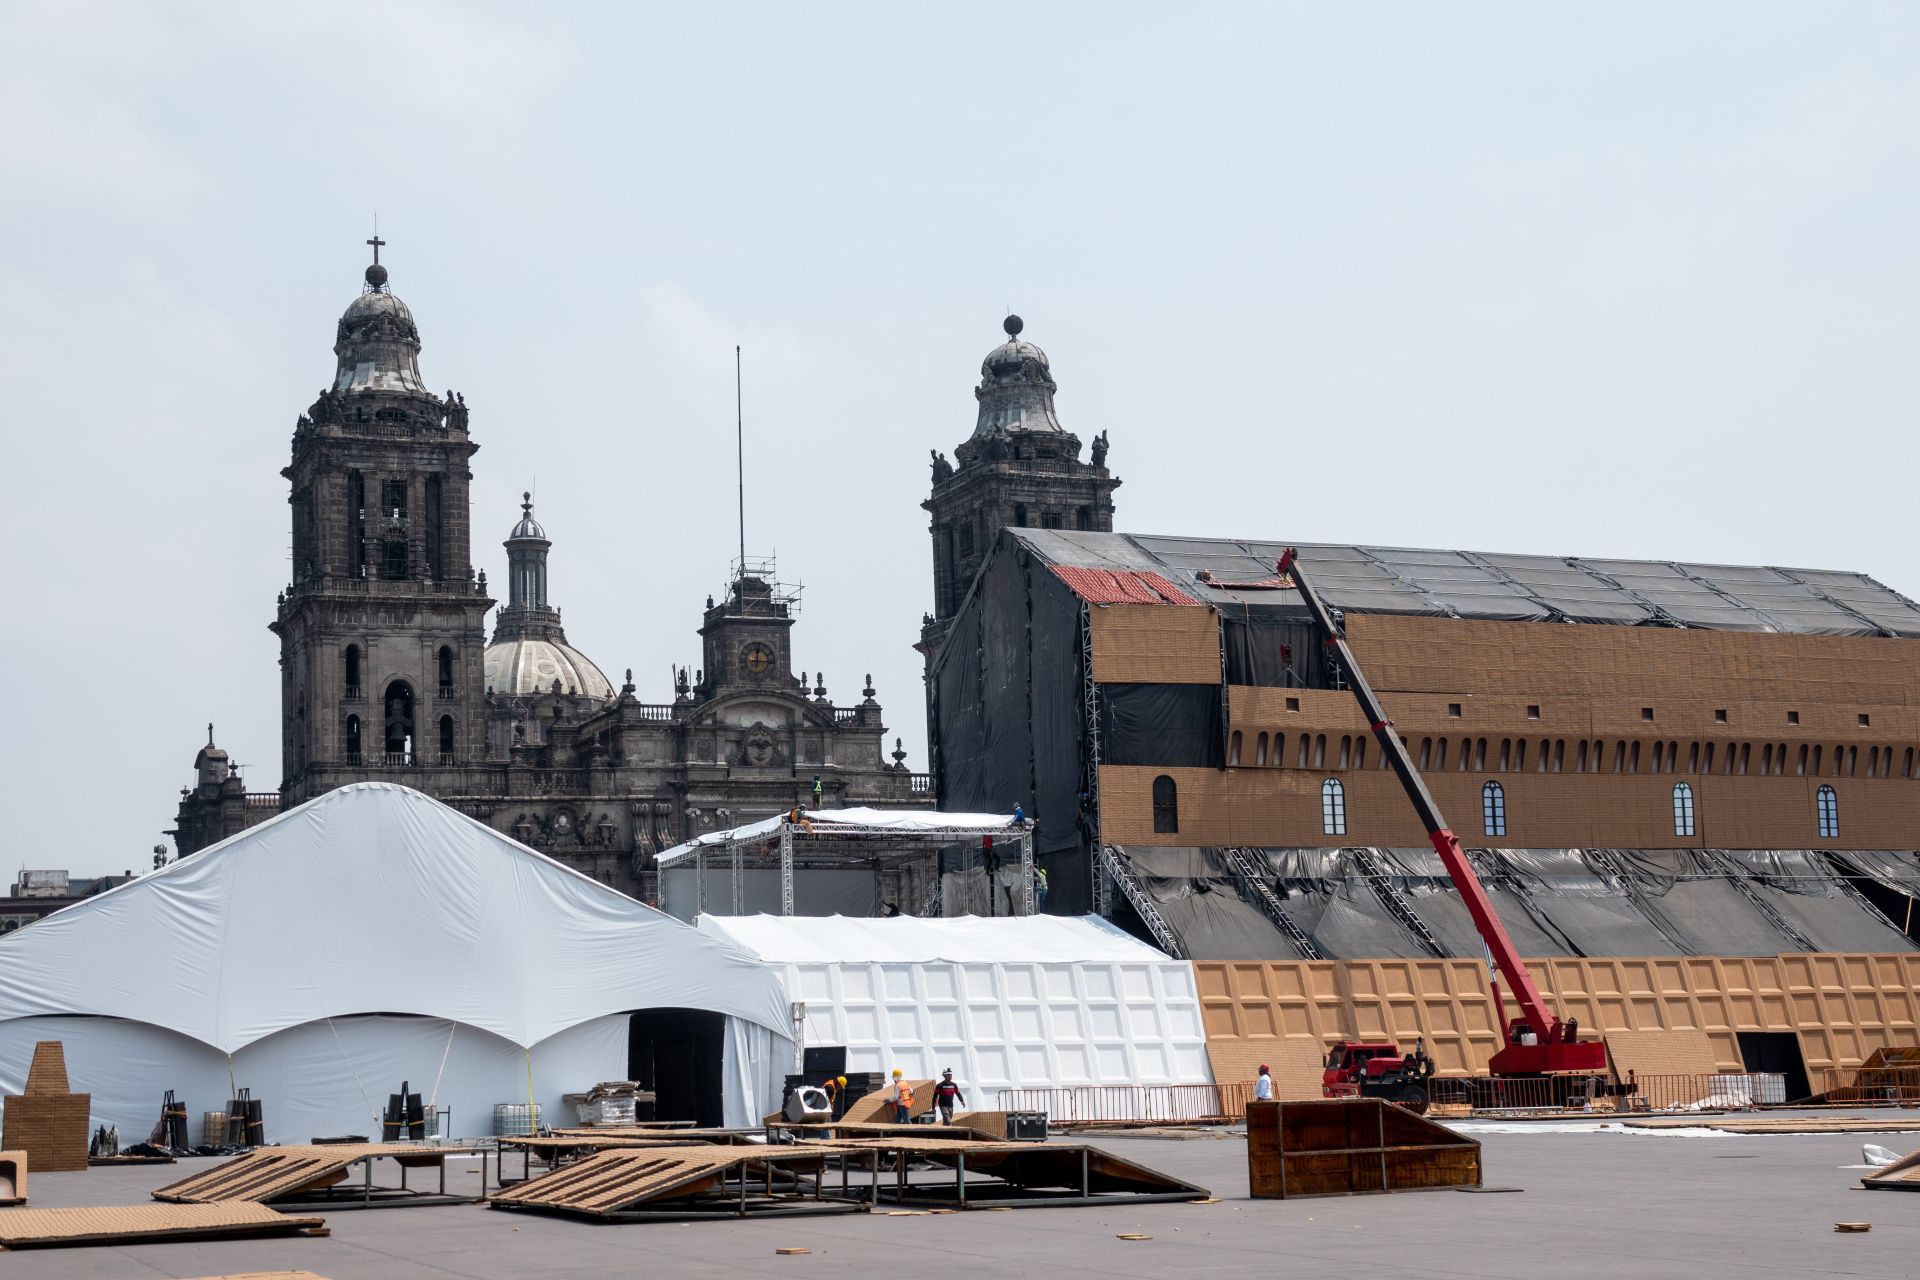 Durante 2021, la Ciudad de México, Nuevo León y Guanajuato concentraron más de la mitad de los visitantes a museos en todo el país.
FOTO: GALO CAÑAS/CUARTOSCURO.COM